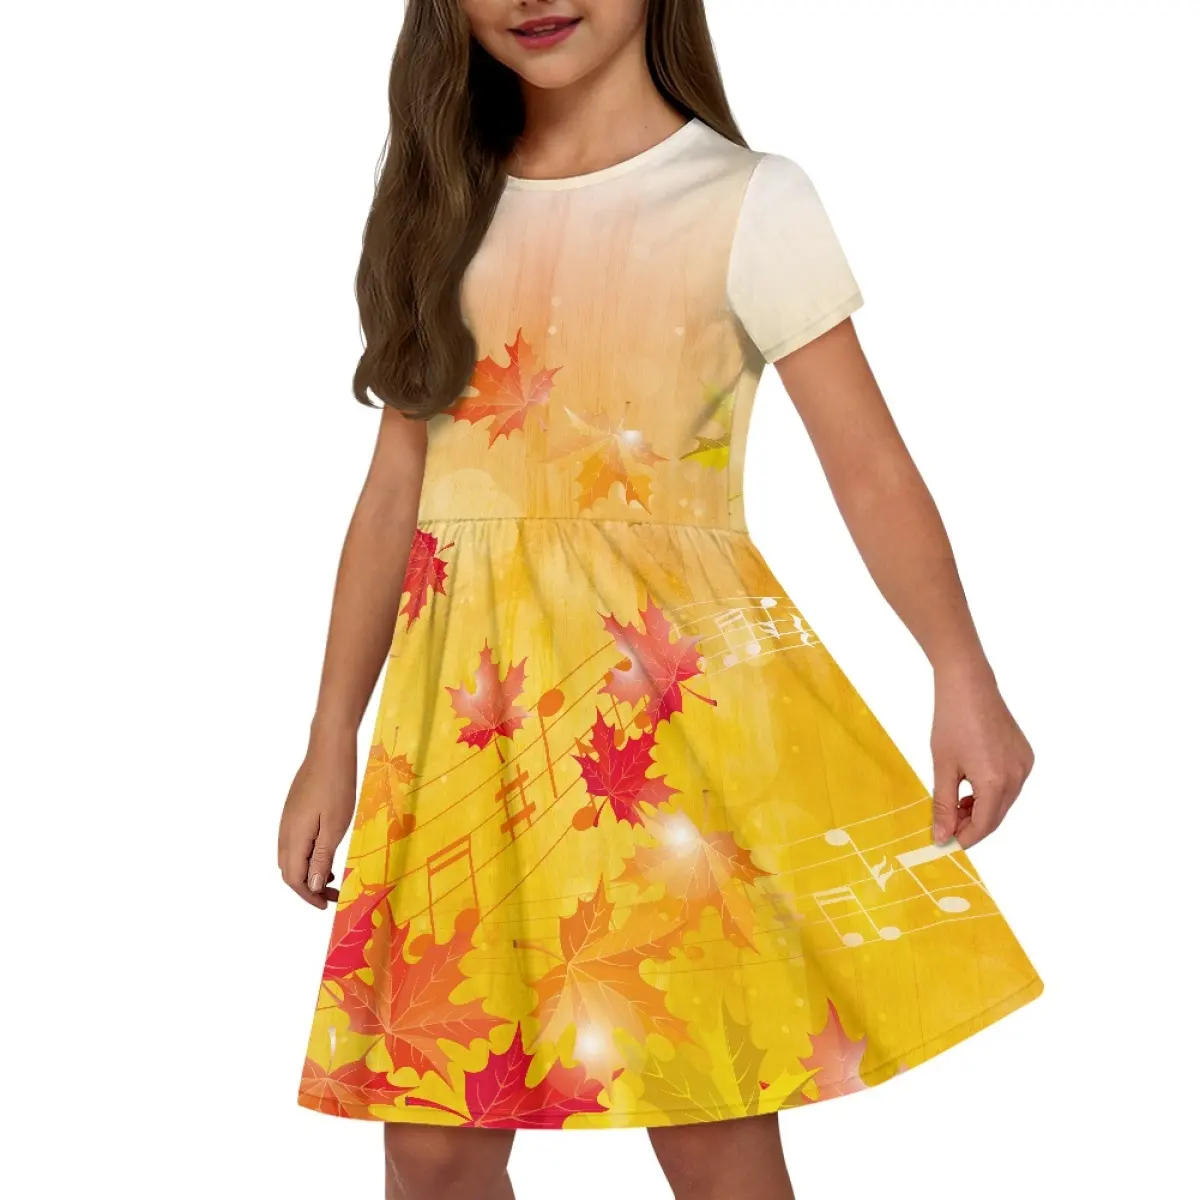 गर्म बिक्री बच्चों के कपड़े धन्यवाद कद्दू मेपल डिजाइन लड़कियों के लिए छोटी आस्तीन बच्चों के कपड़े